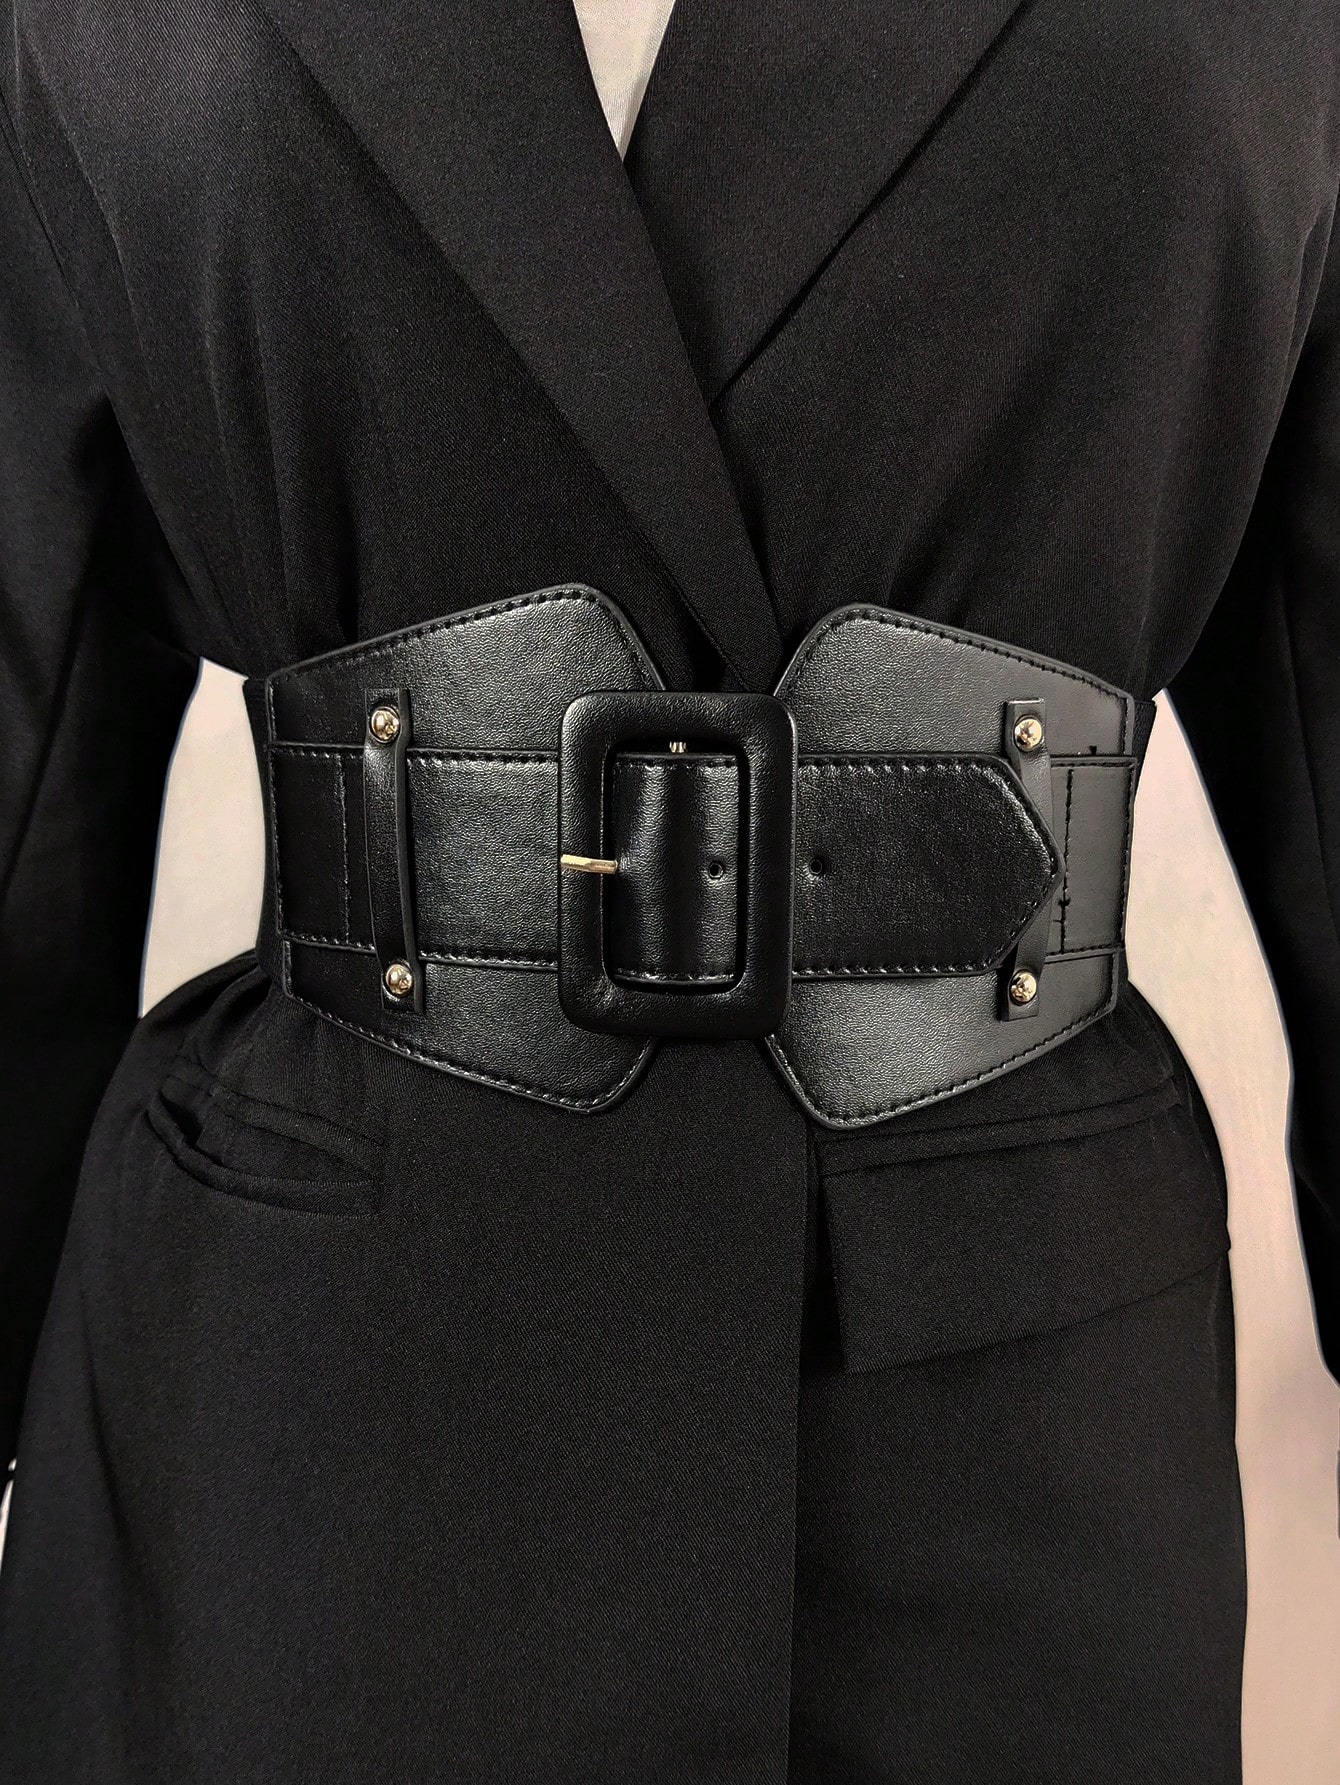 1 шт. стильный и элегантный корсетный ремень с квадратной пряжкой для пальто и платьев, черный